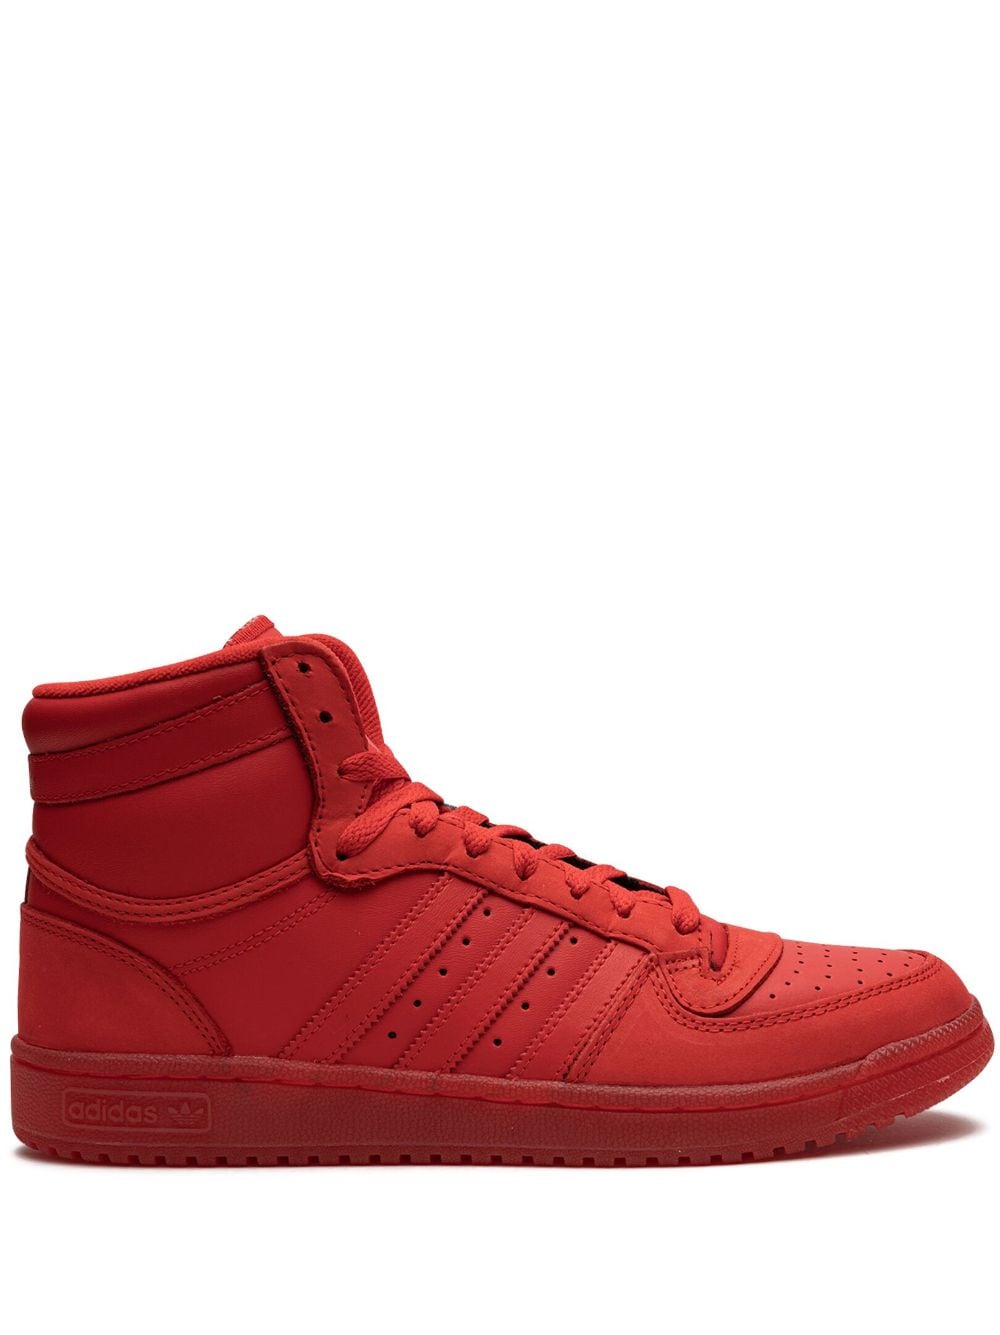 Adidas Originals Top Ten Rb High-top Sneakers In Red